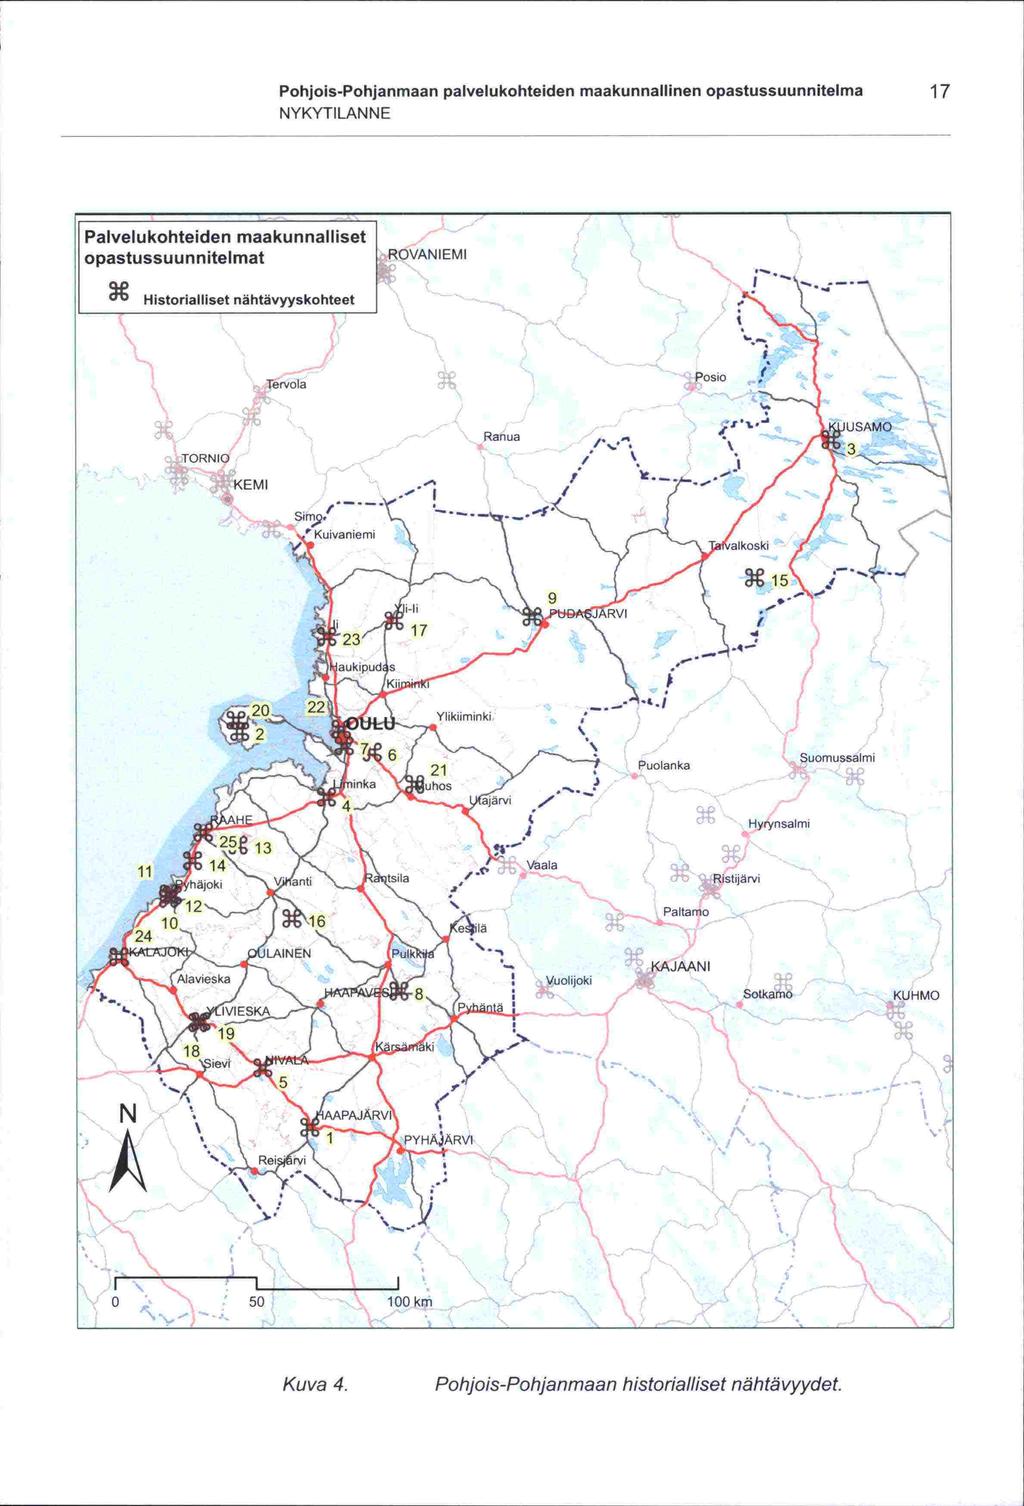 ' -S -S Pohjois-Pohjanmaan palvelukohteiden maakunnallinen opastussuunnitelma 17 NYKYTILANNE Palvelukohteiden maakunnalliset opastussuunnitelmat ROVANIEMI Historialliset nähtävyyskohteet - I Tervola